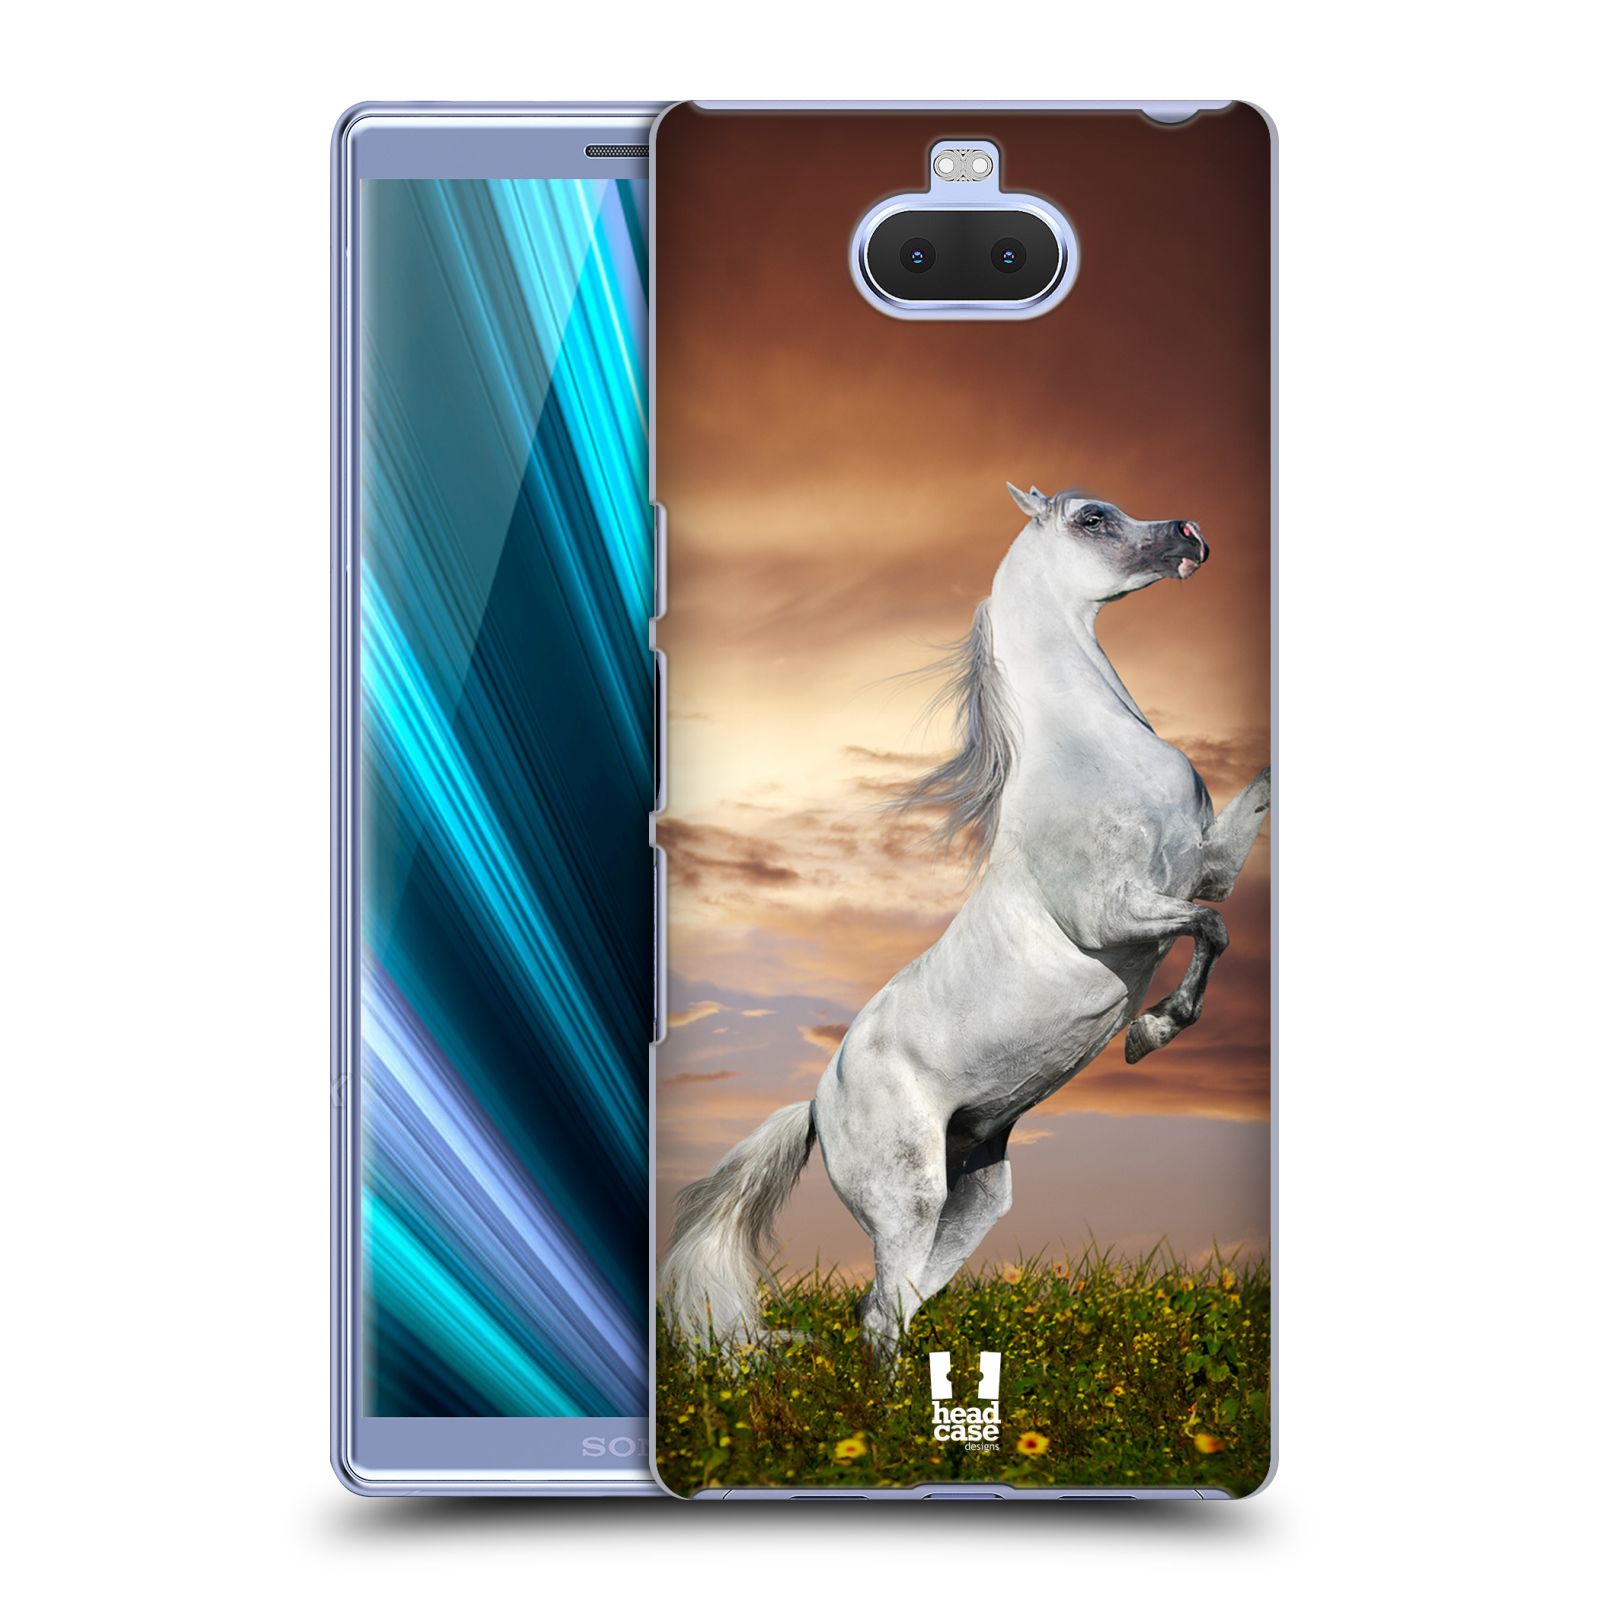 Zadní obal pro mobil Sony Xperia 10 - HEAD CASE - Svět zvířat divoký kůň